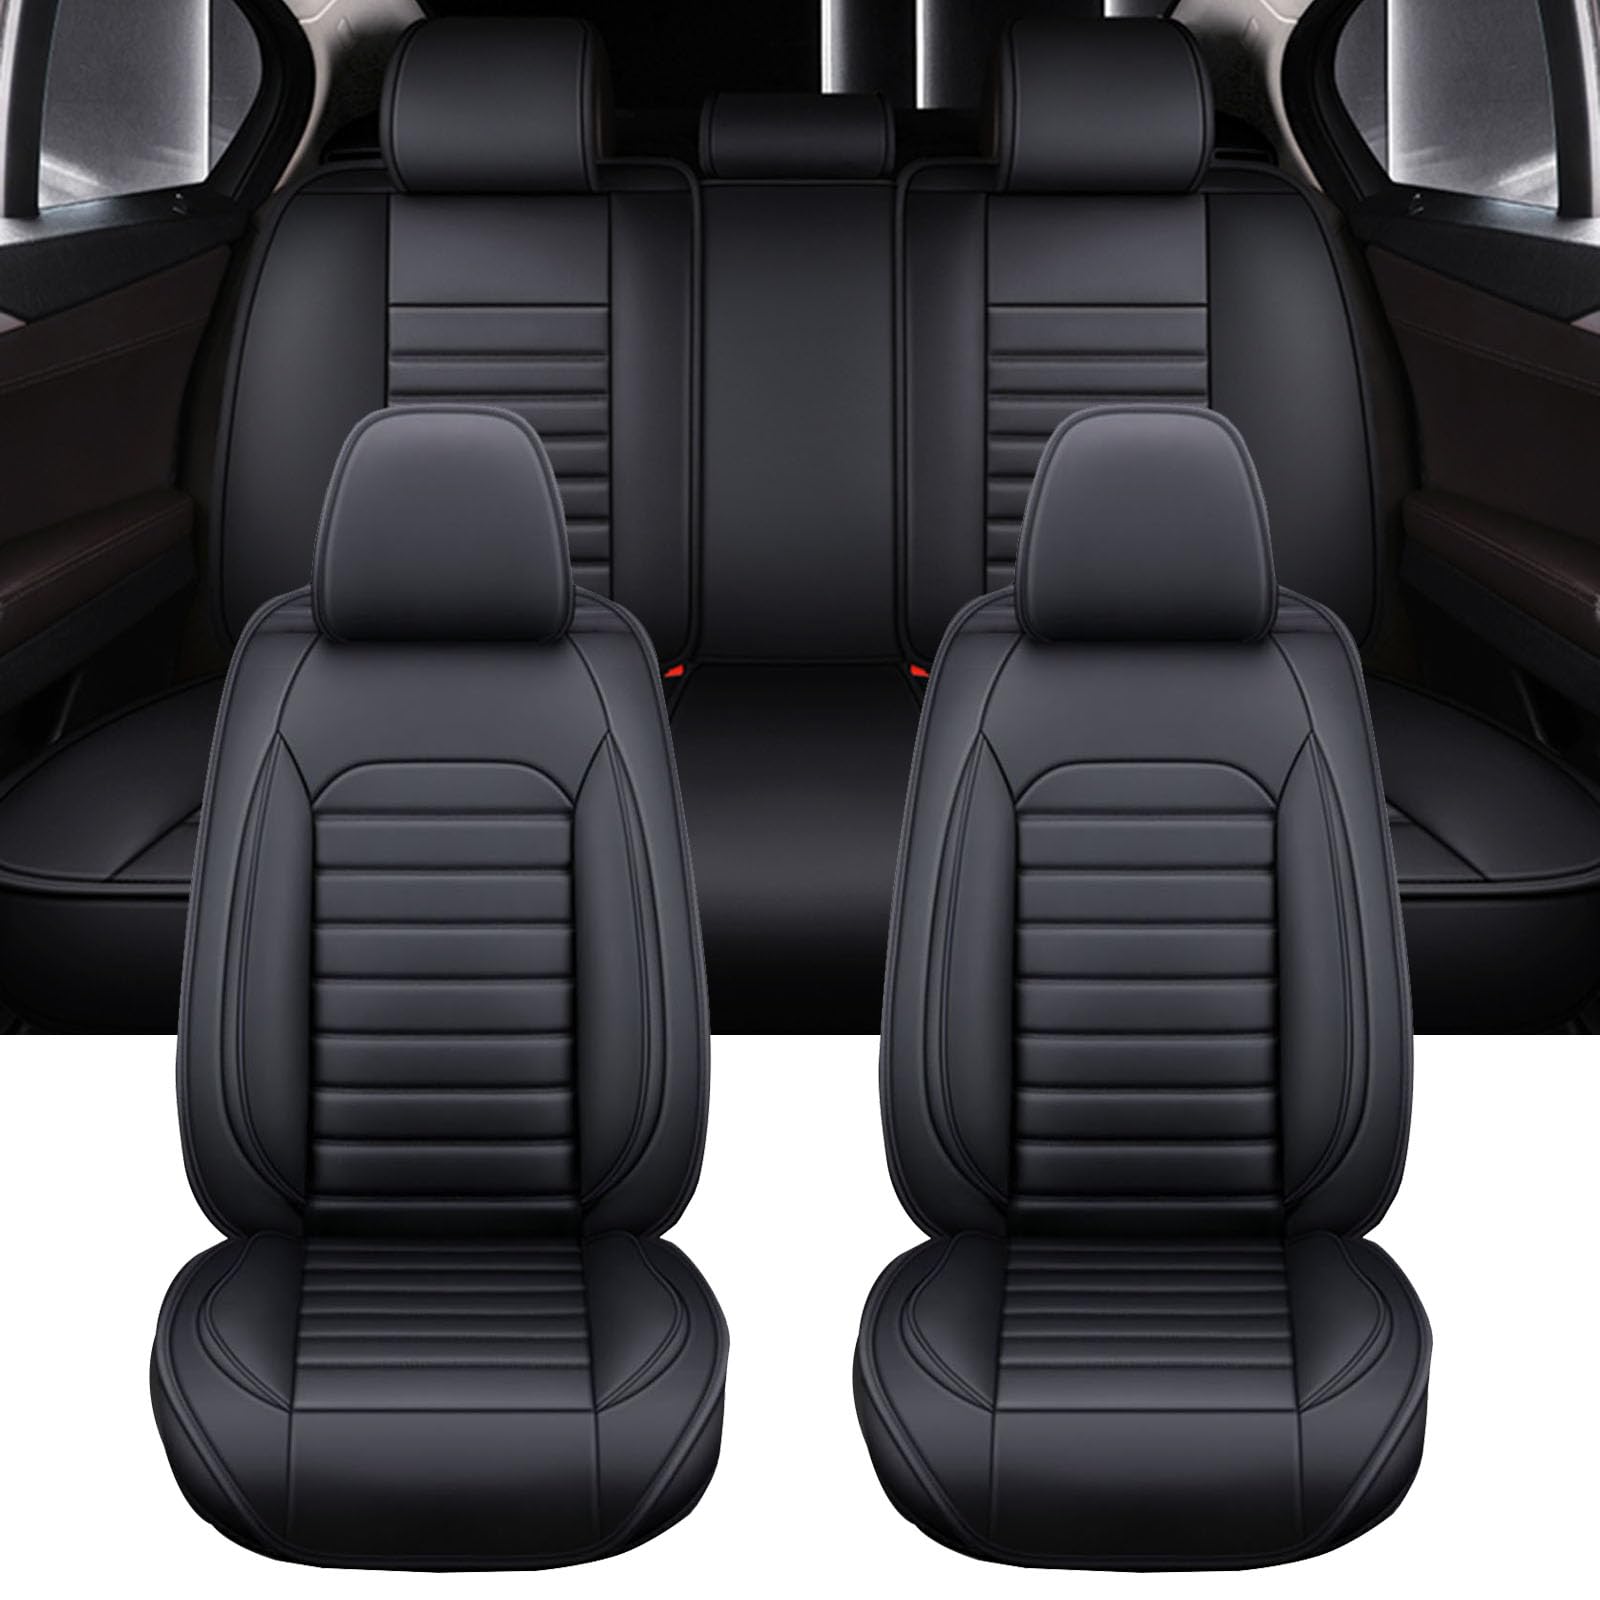 XLUMIO Auto Sitzbezüge Set für Toyota C HR Camry, 5 Sitzer Sitzbezüge Vorne und Hinten, Wasserdichter PU Leder Autositzschutzbezug, Verschleißfest Sitzschoner,D Black von XLUMIO